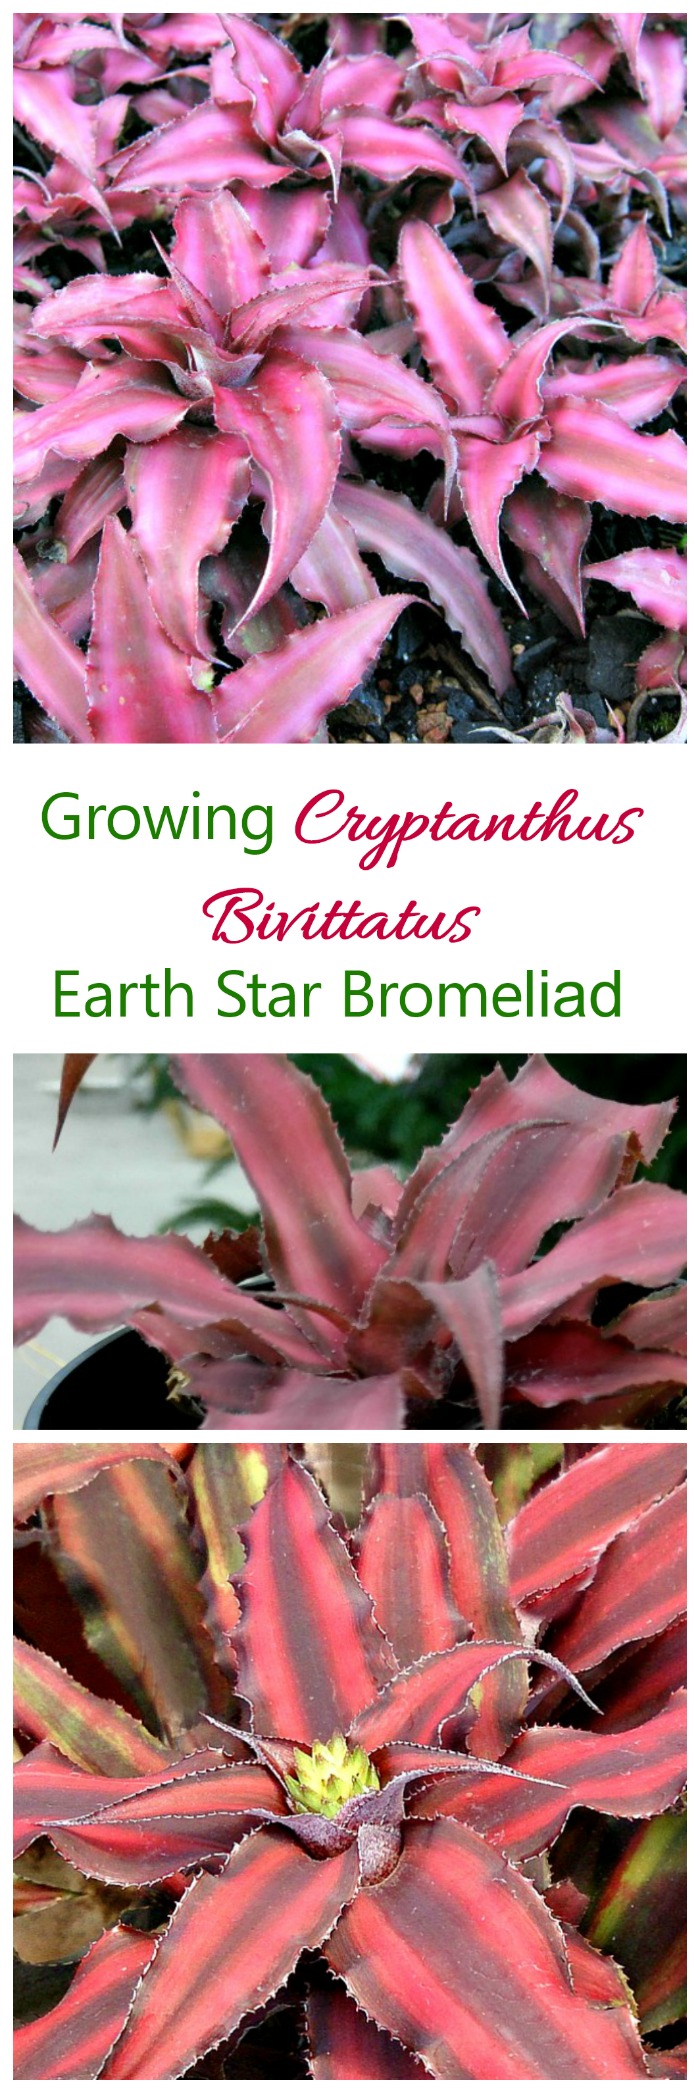 Cryptanthus Bivittatus - Termesztés Föld Csillag Bromélia